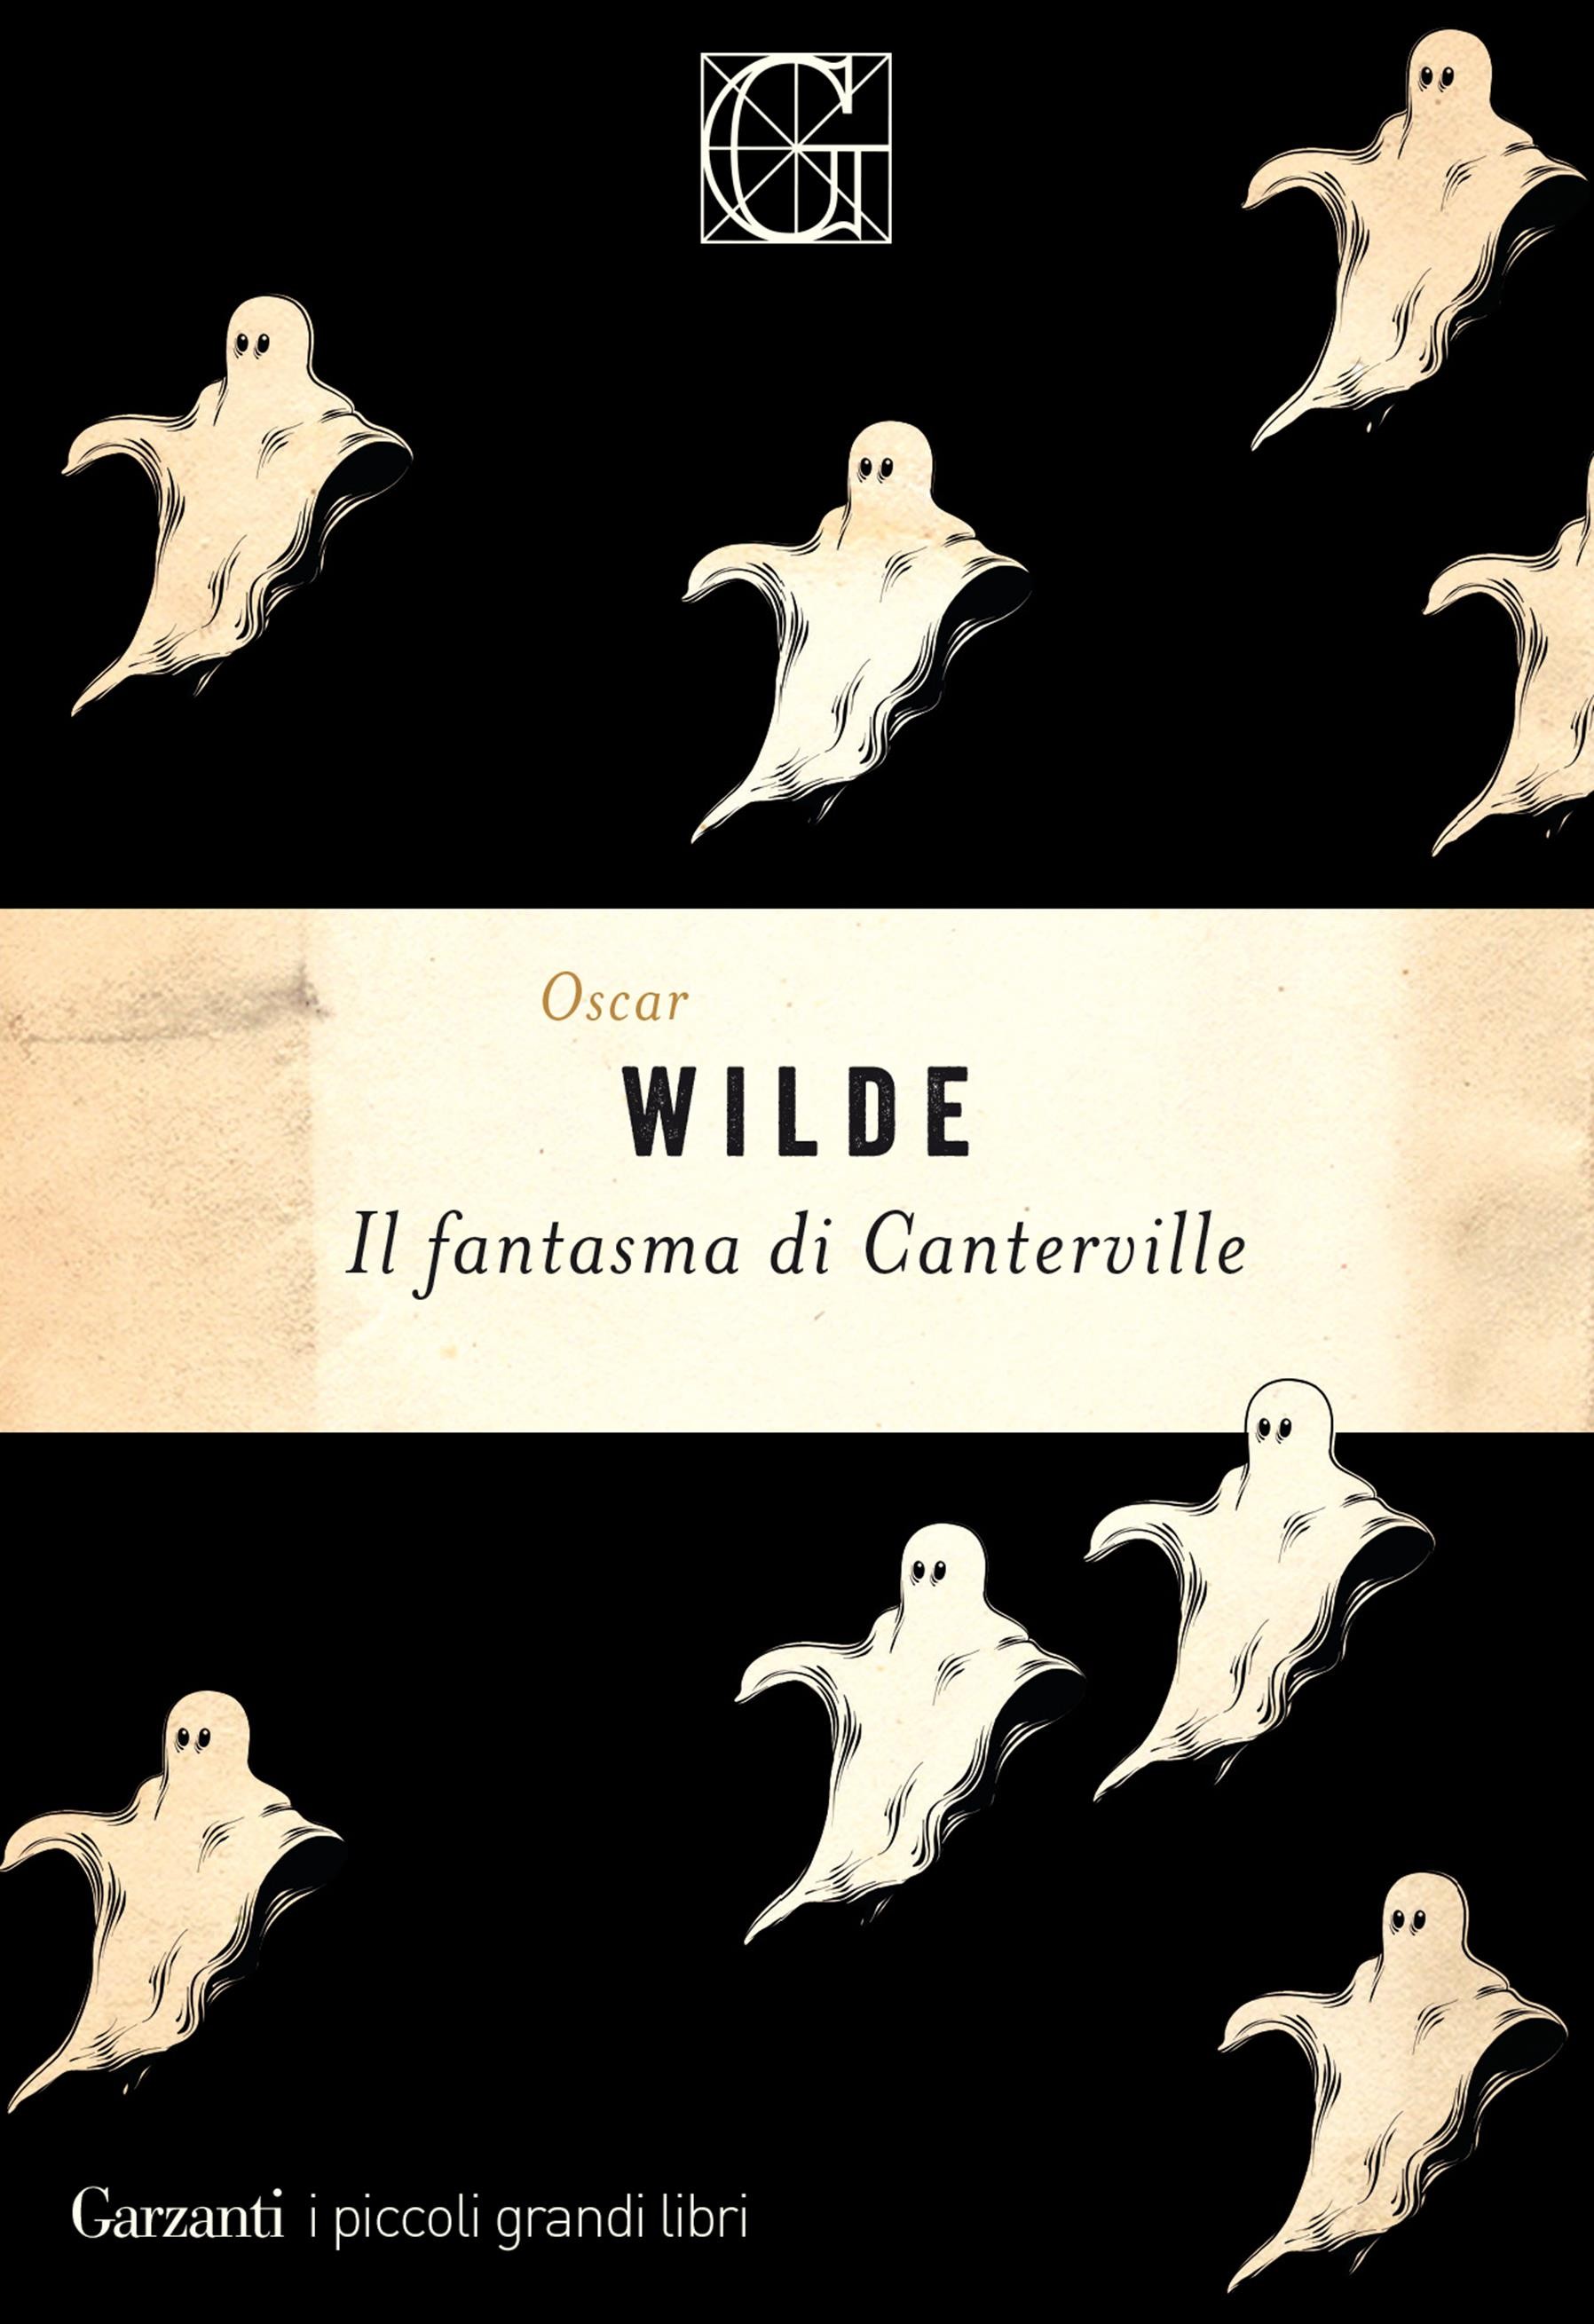 Il fantasma di Canterville - Librerie.coop